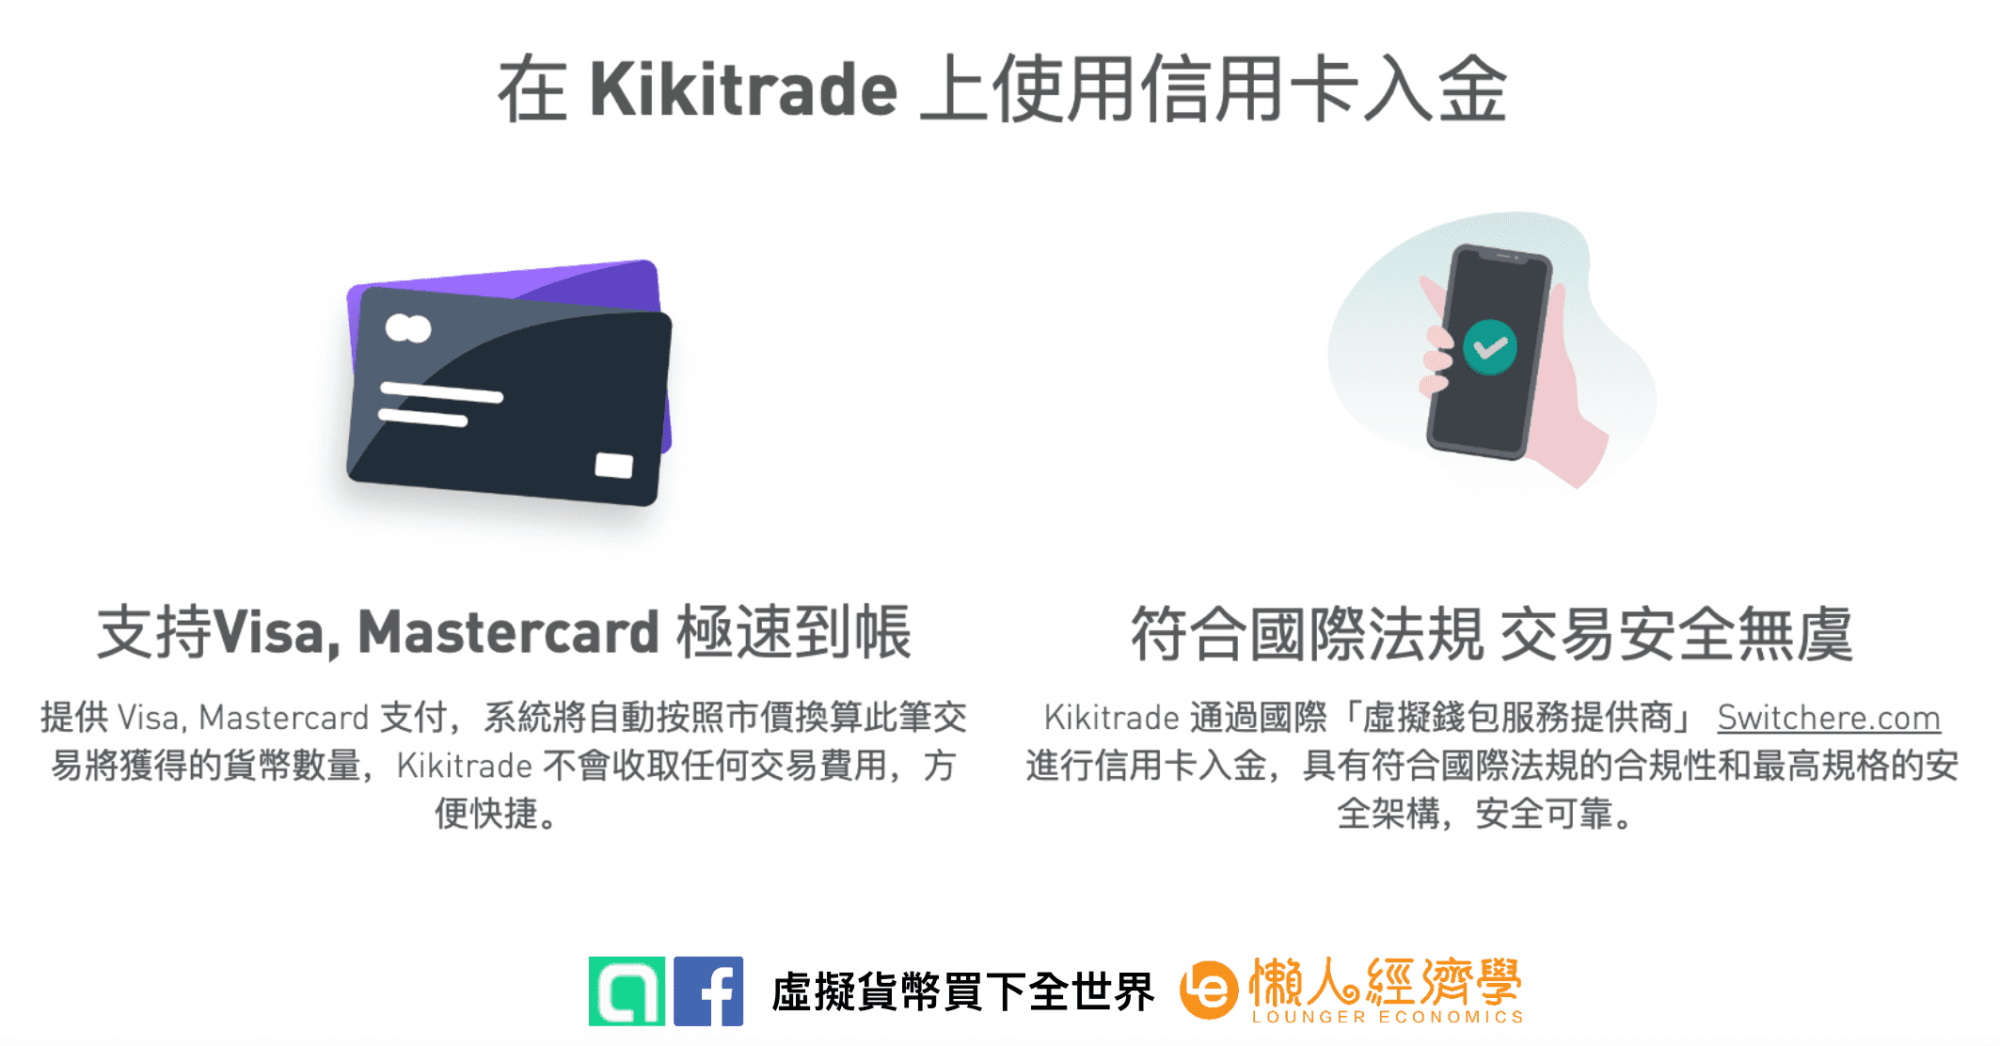 二、Kikitrade 信用卡刷卡入金